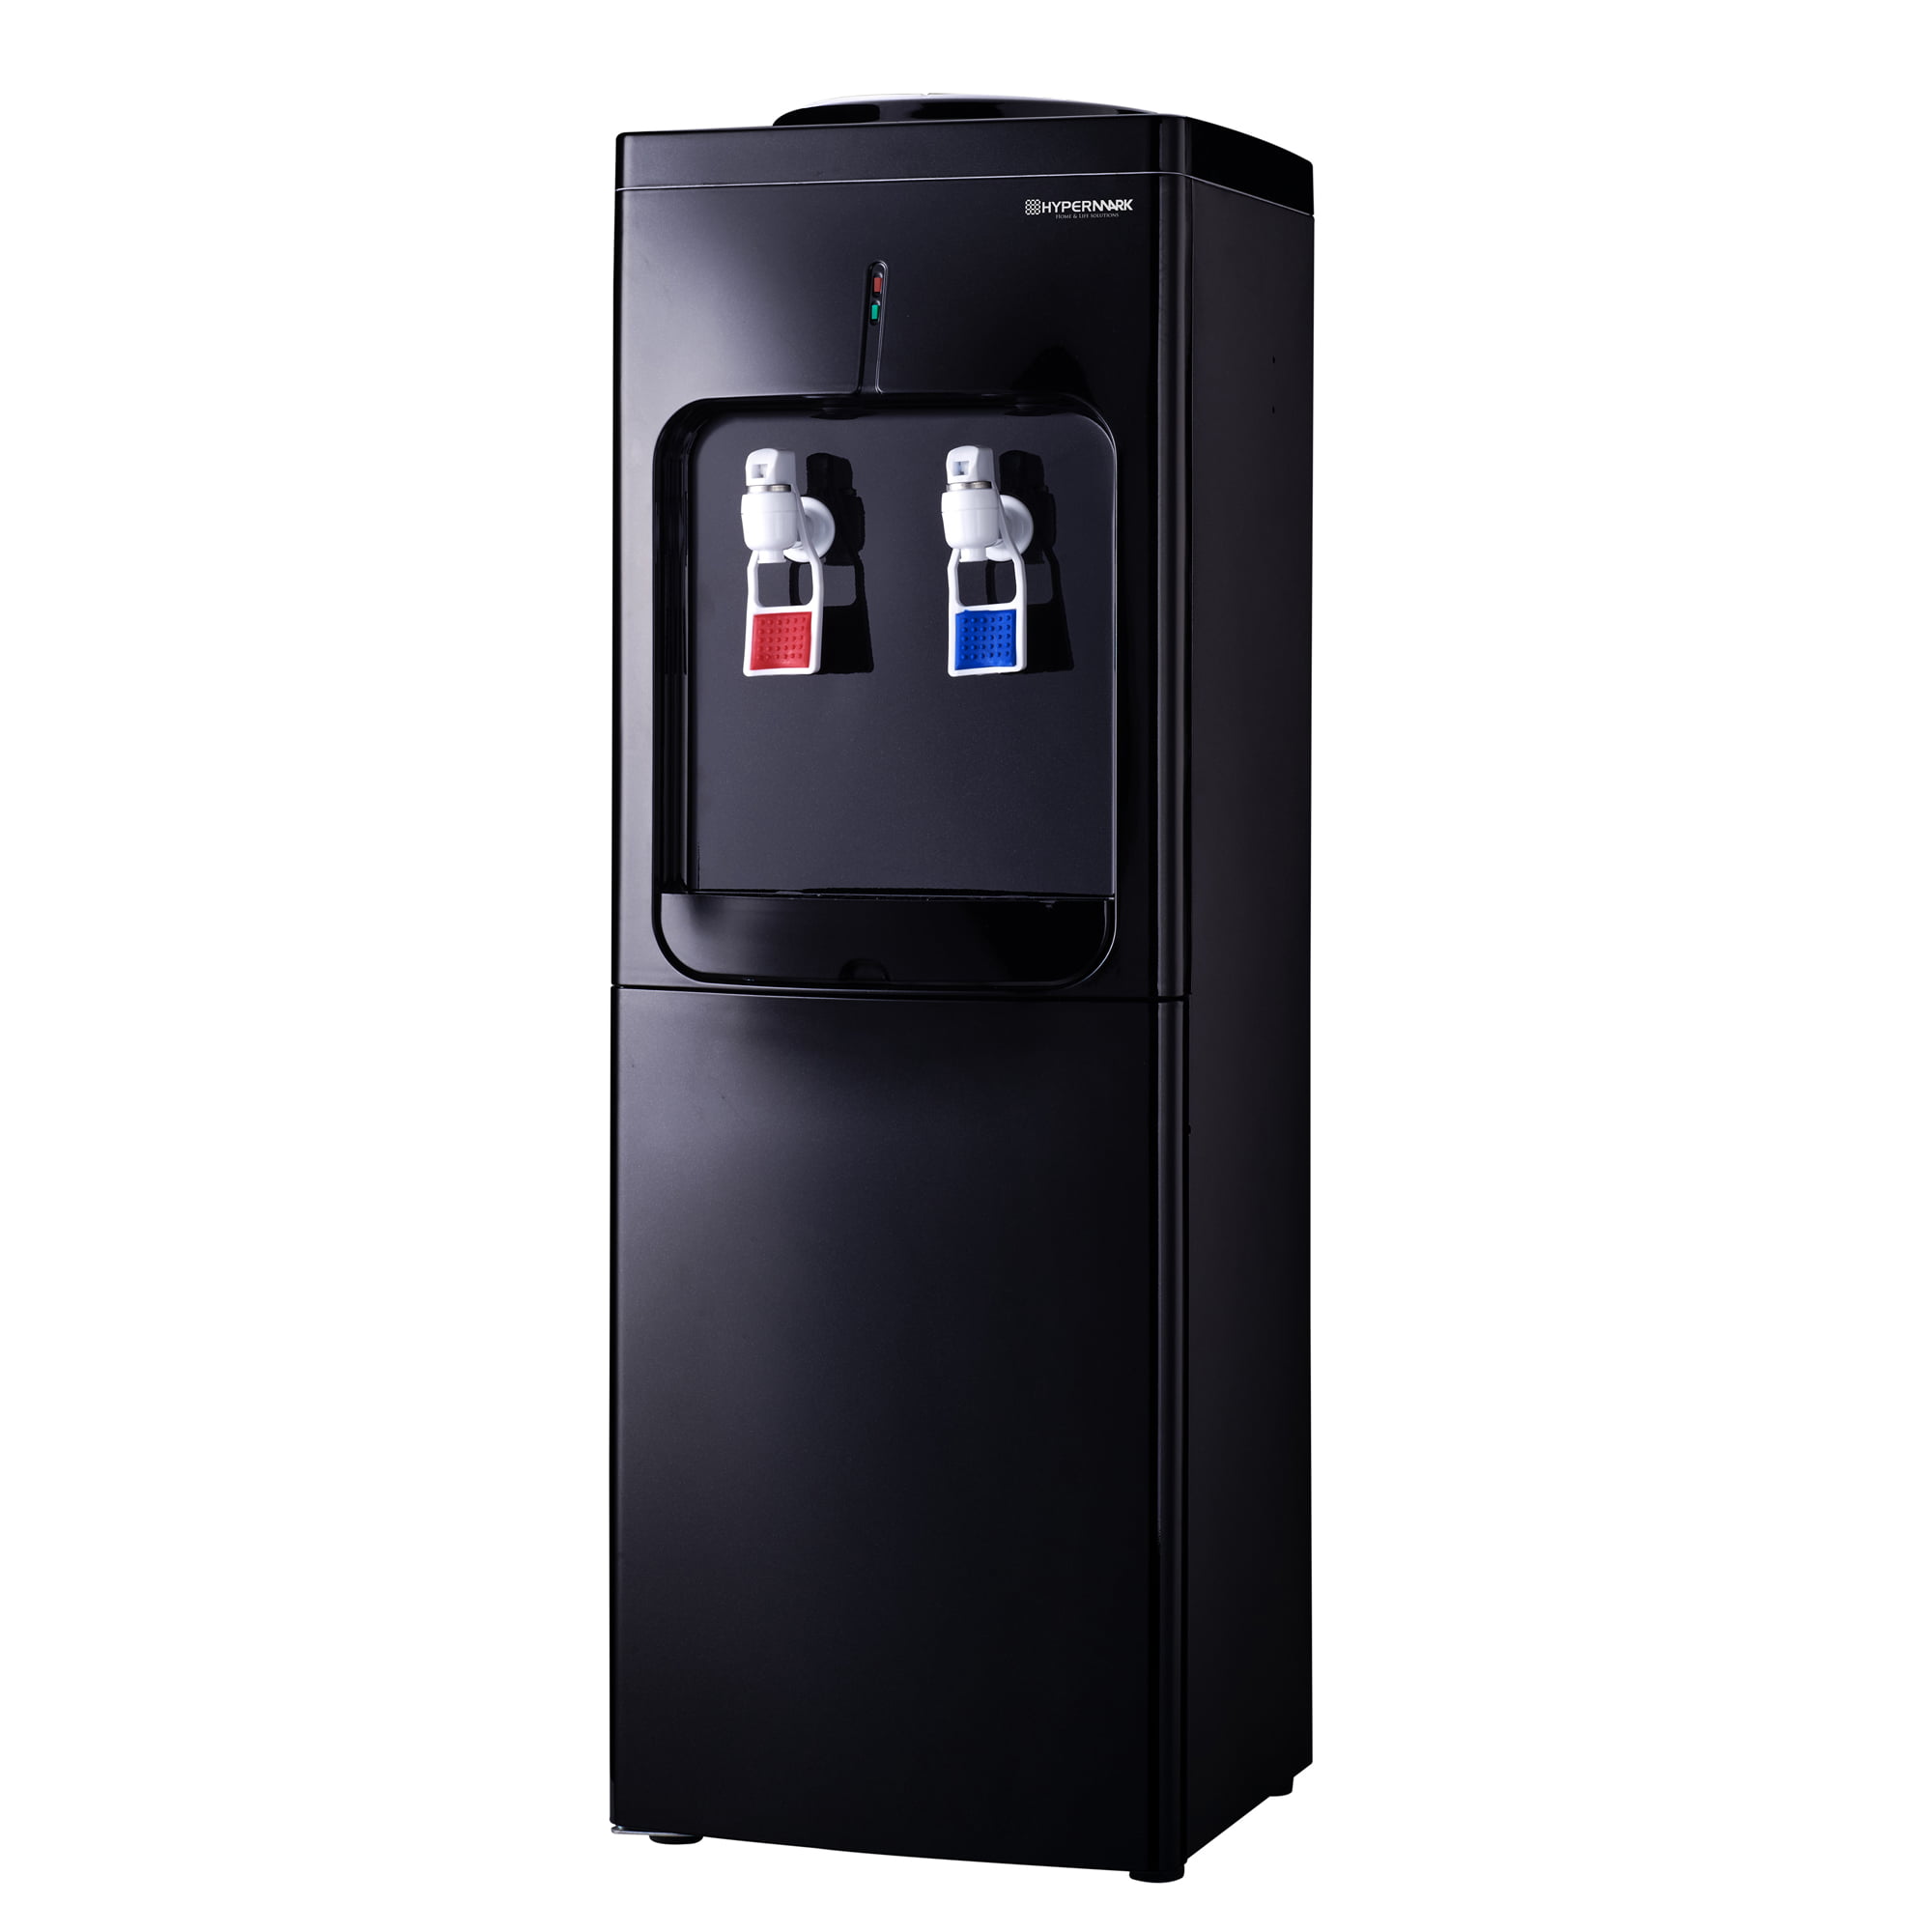 Dispensers de agua fría y caliente — B5CH y B14A — SP Plasticos